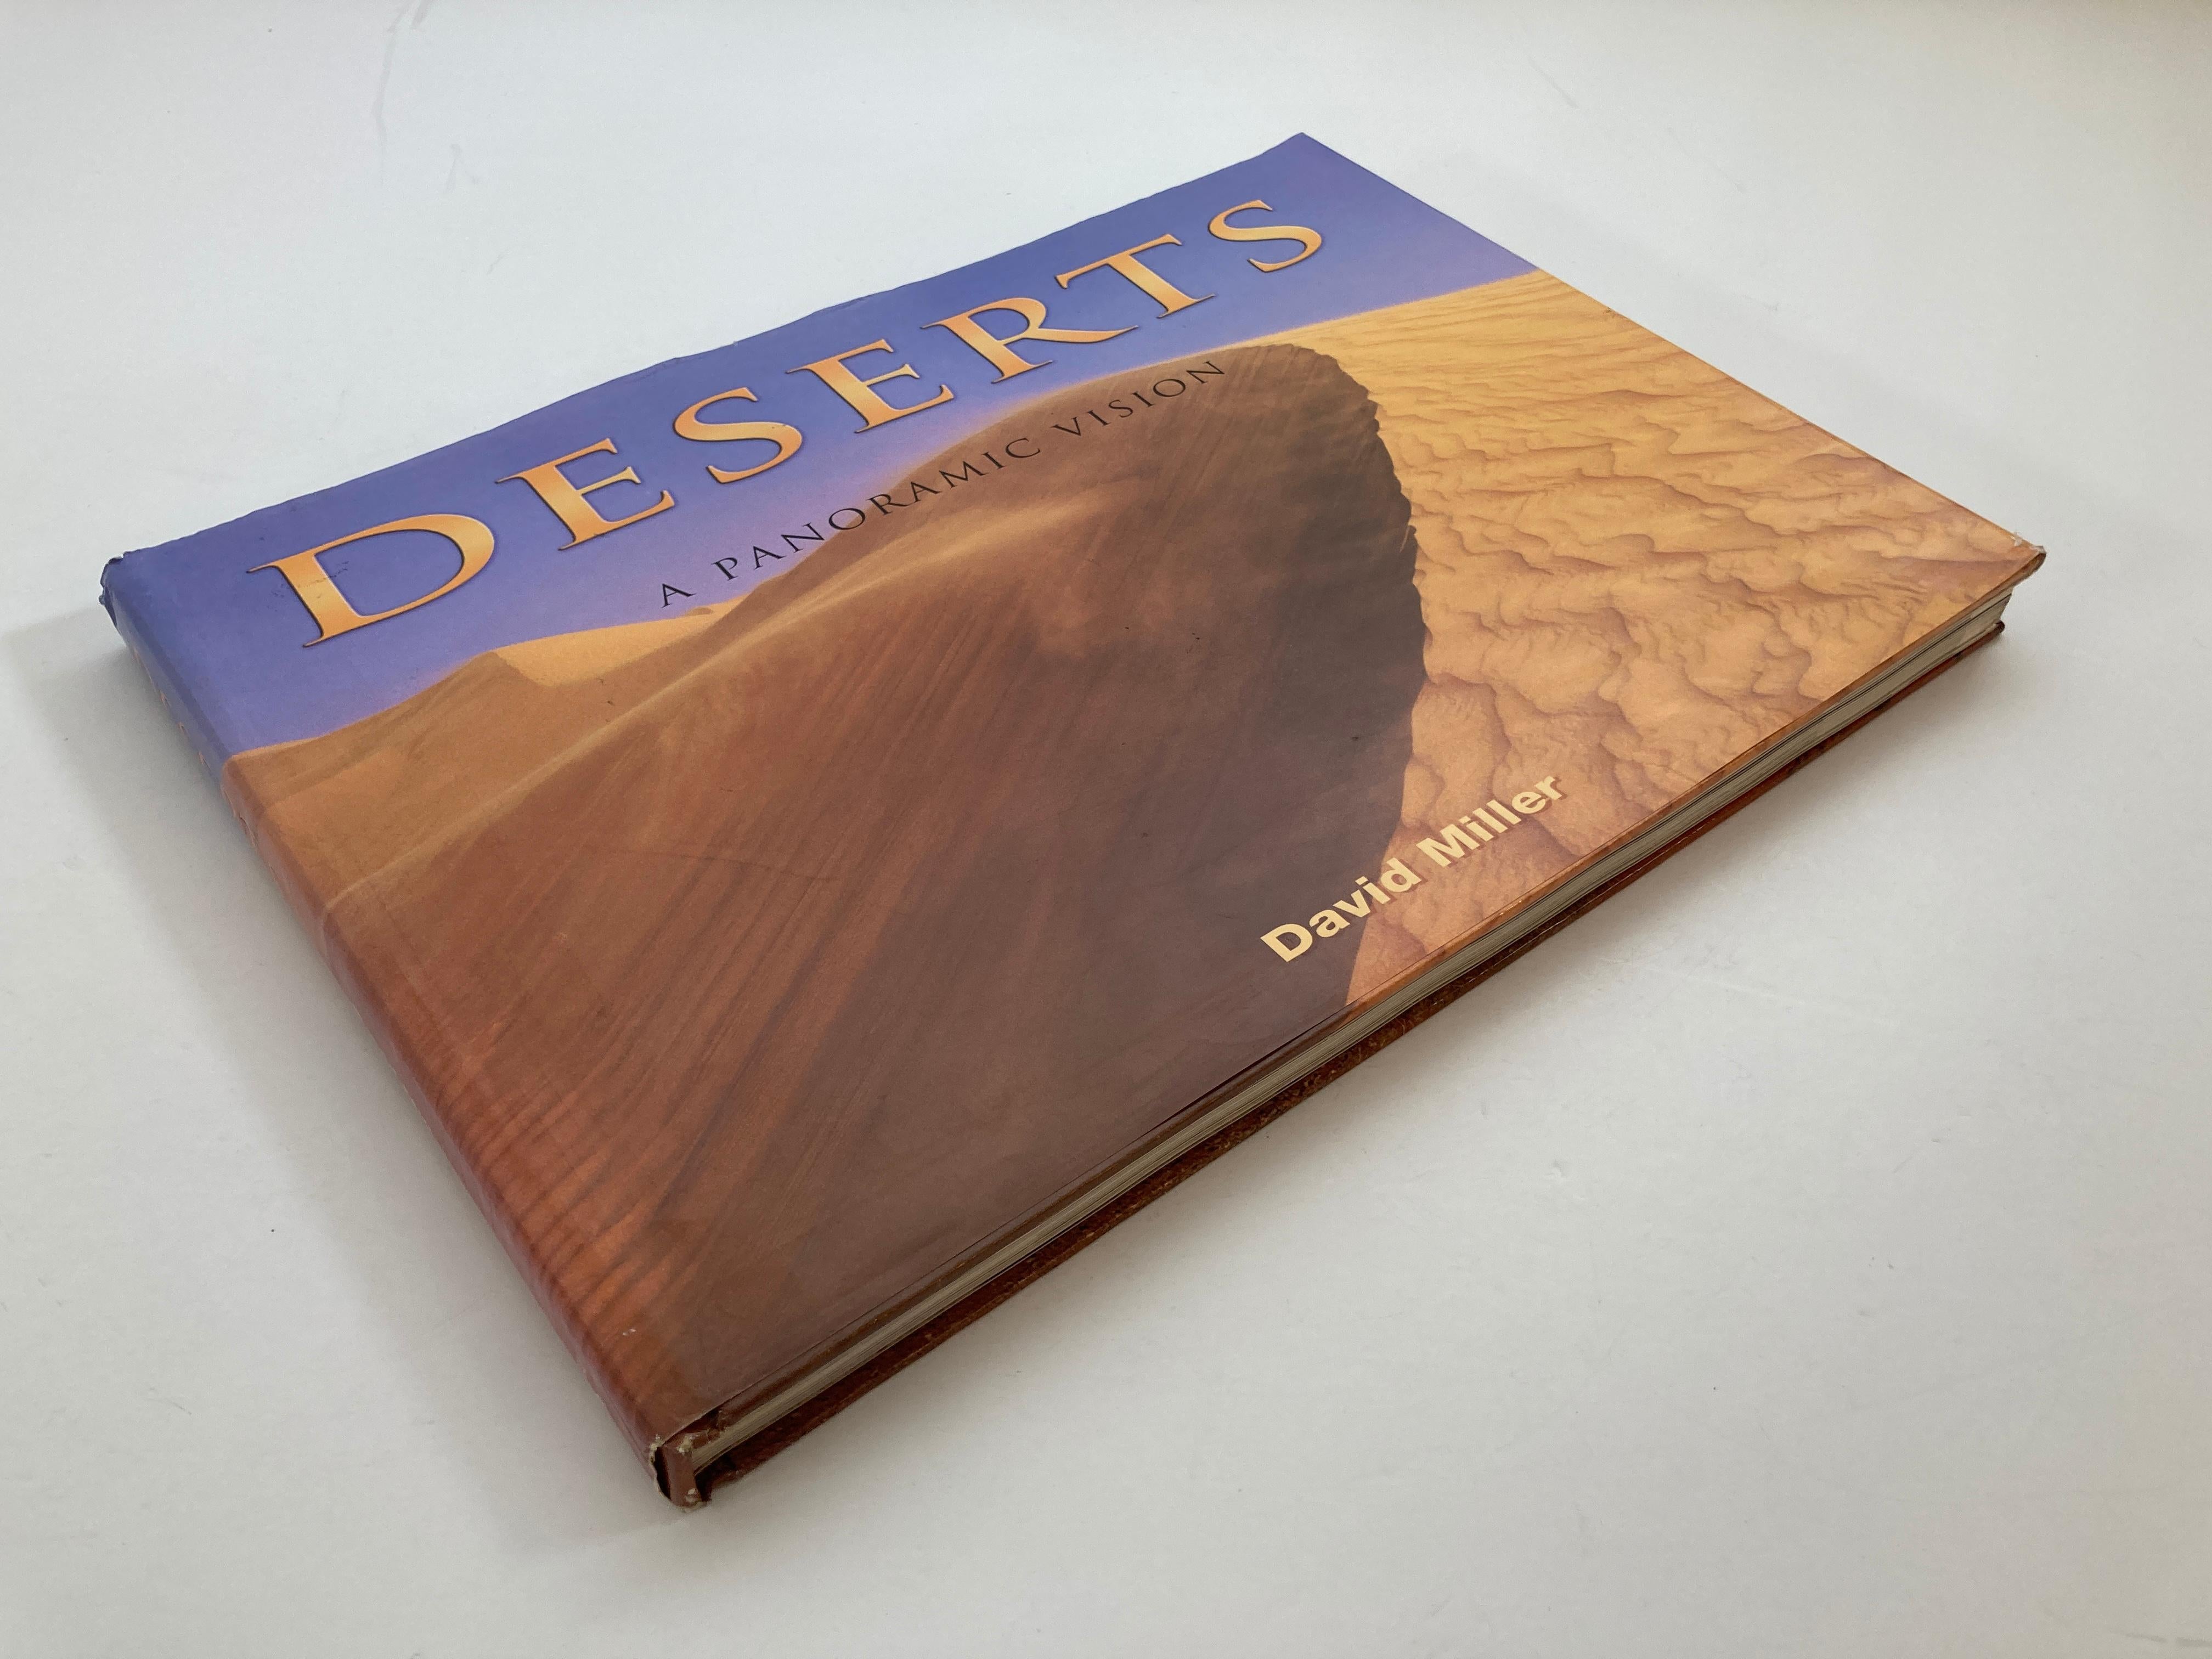 Déserts : A Panoramic Vision par David Miller Grand livre à couverture rigide.
Explorez le monde du désert et découvrez la beauté qui s'y trouve !
Il s'agit d'un beau livre de bibliothèque ou de table basse.